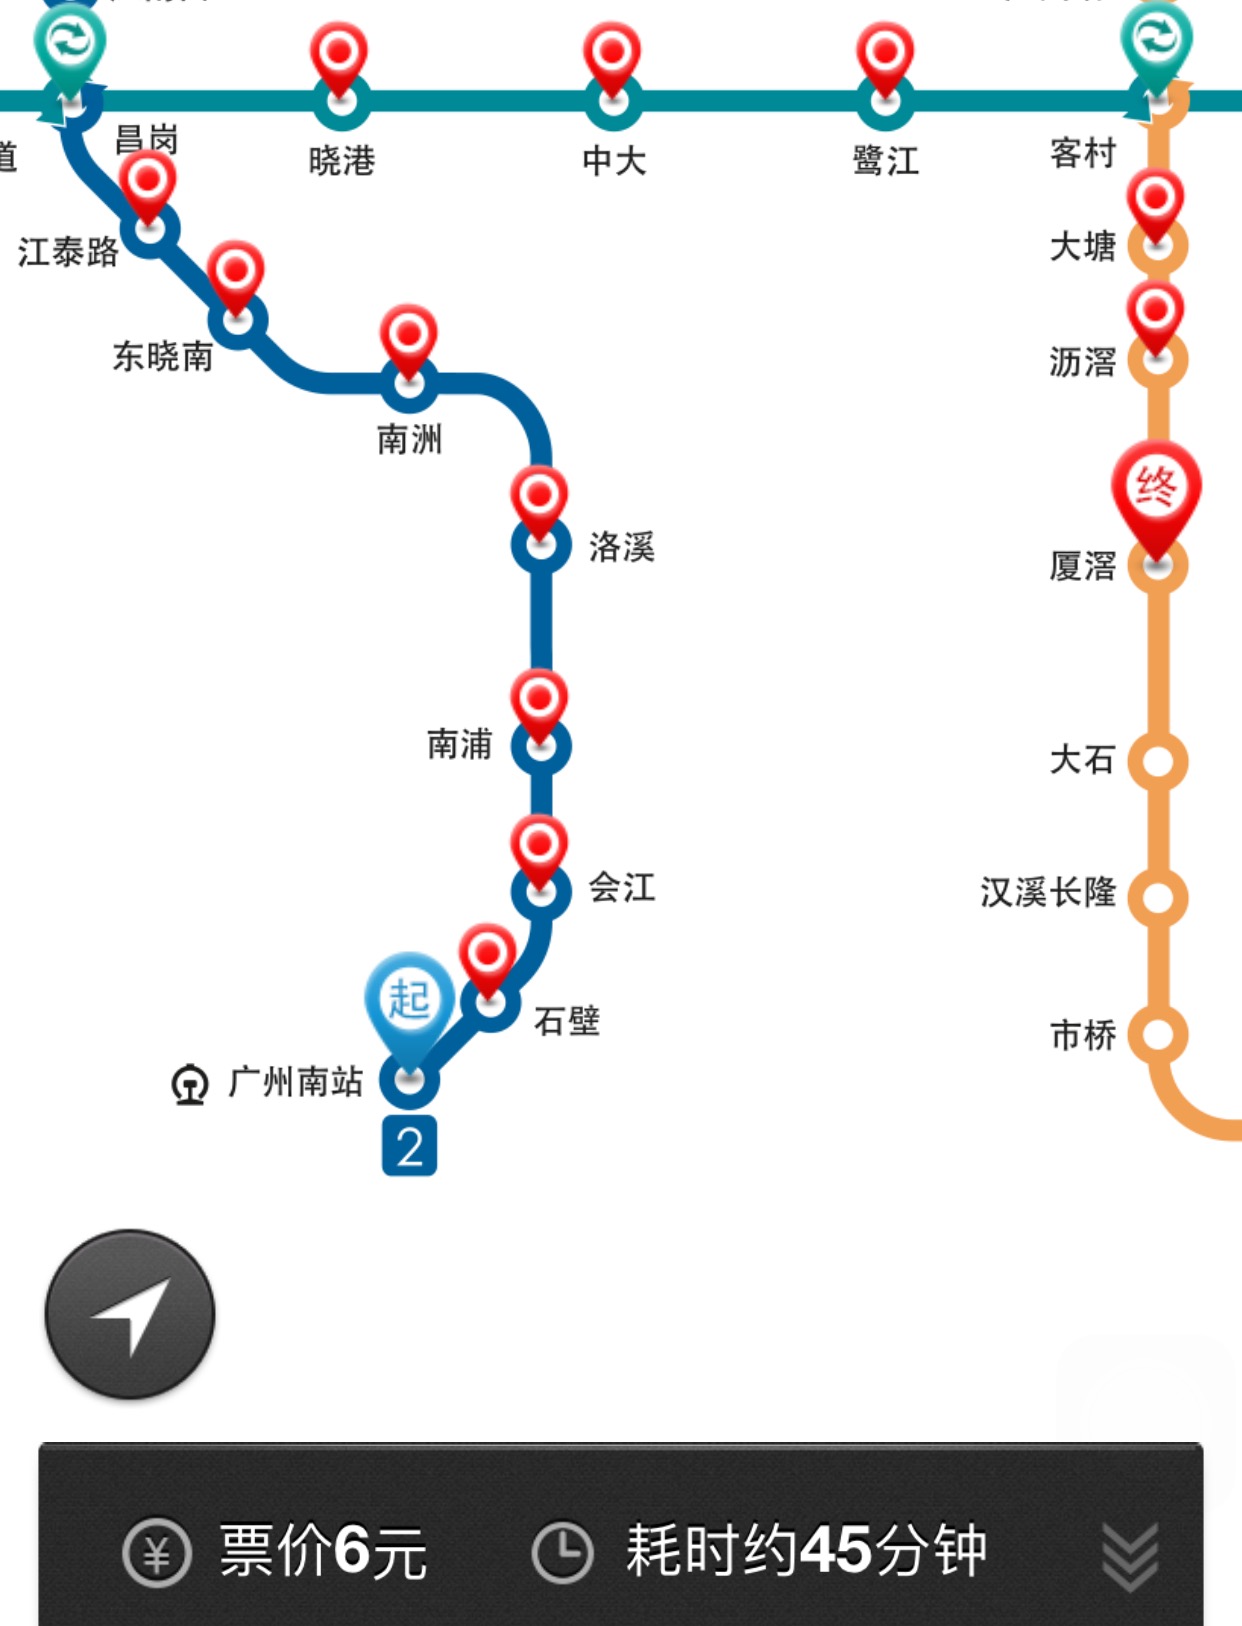 广州南站地铁路线图图片